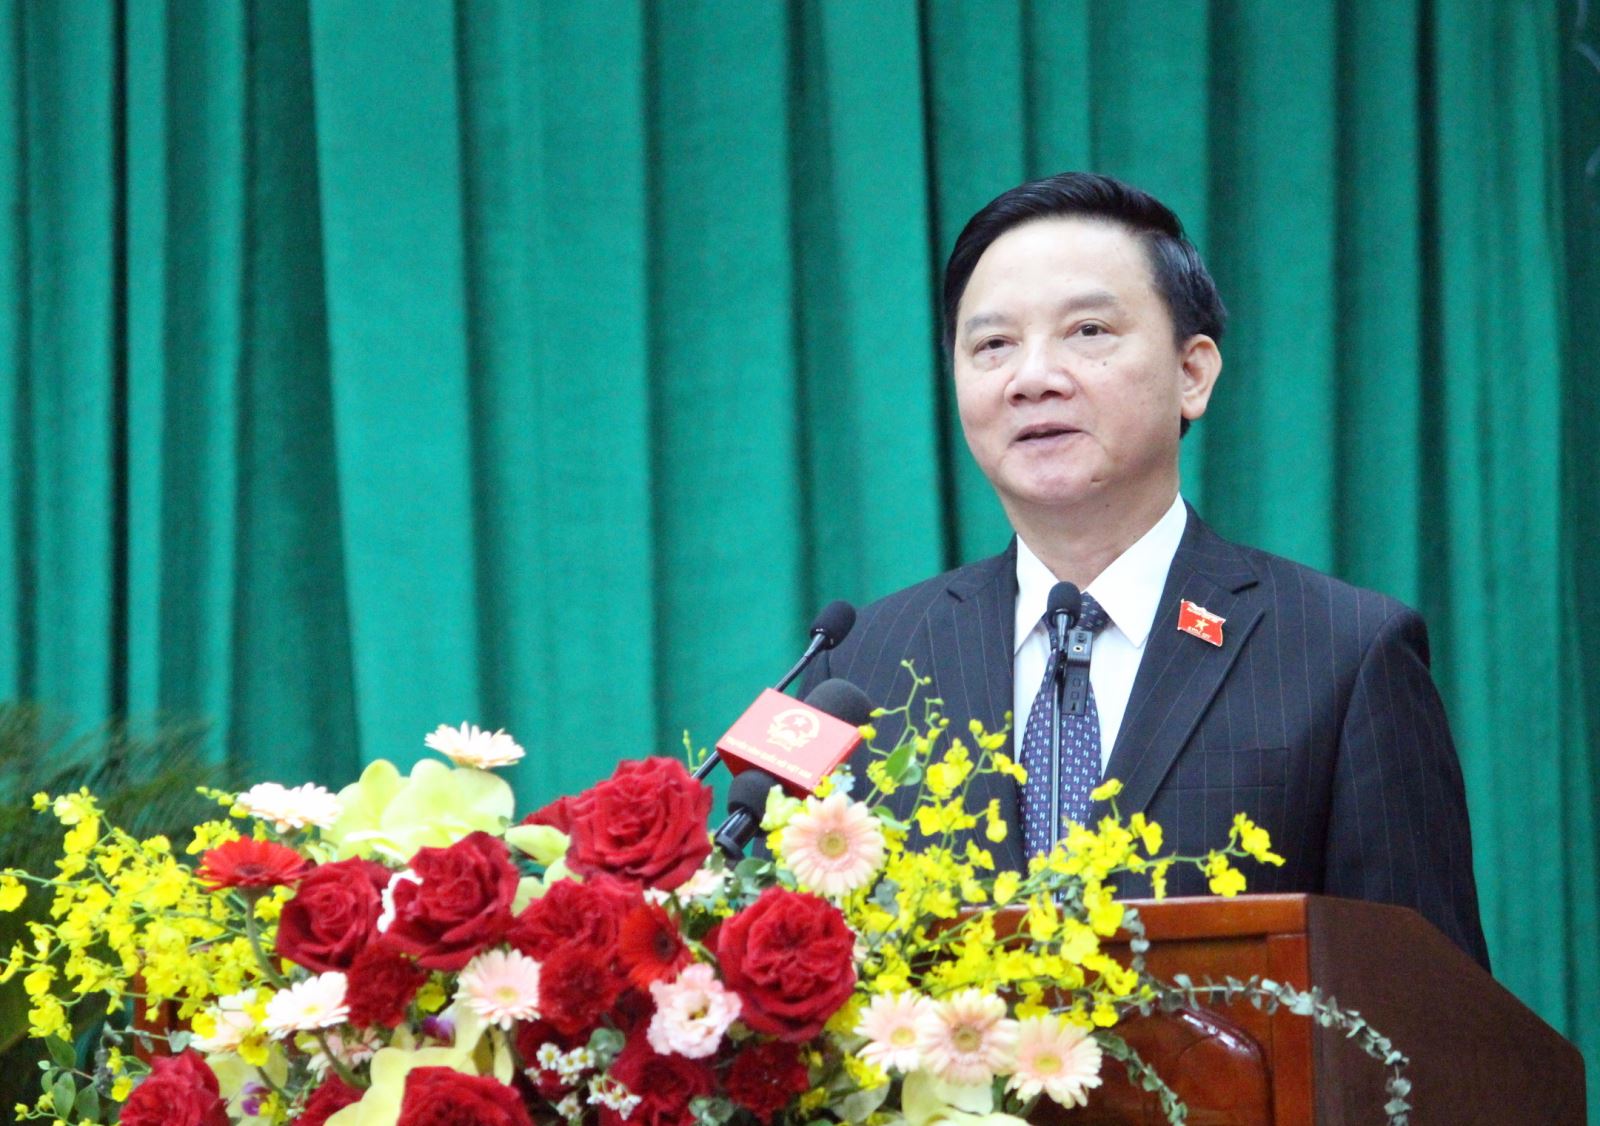 Phó Chủ tịch Quốc hội Nguyễn Khắc Định phát biểu chỉ đạo tại Kỳ họp